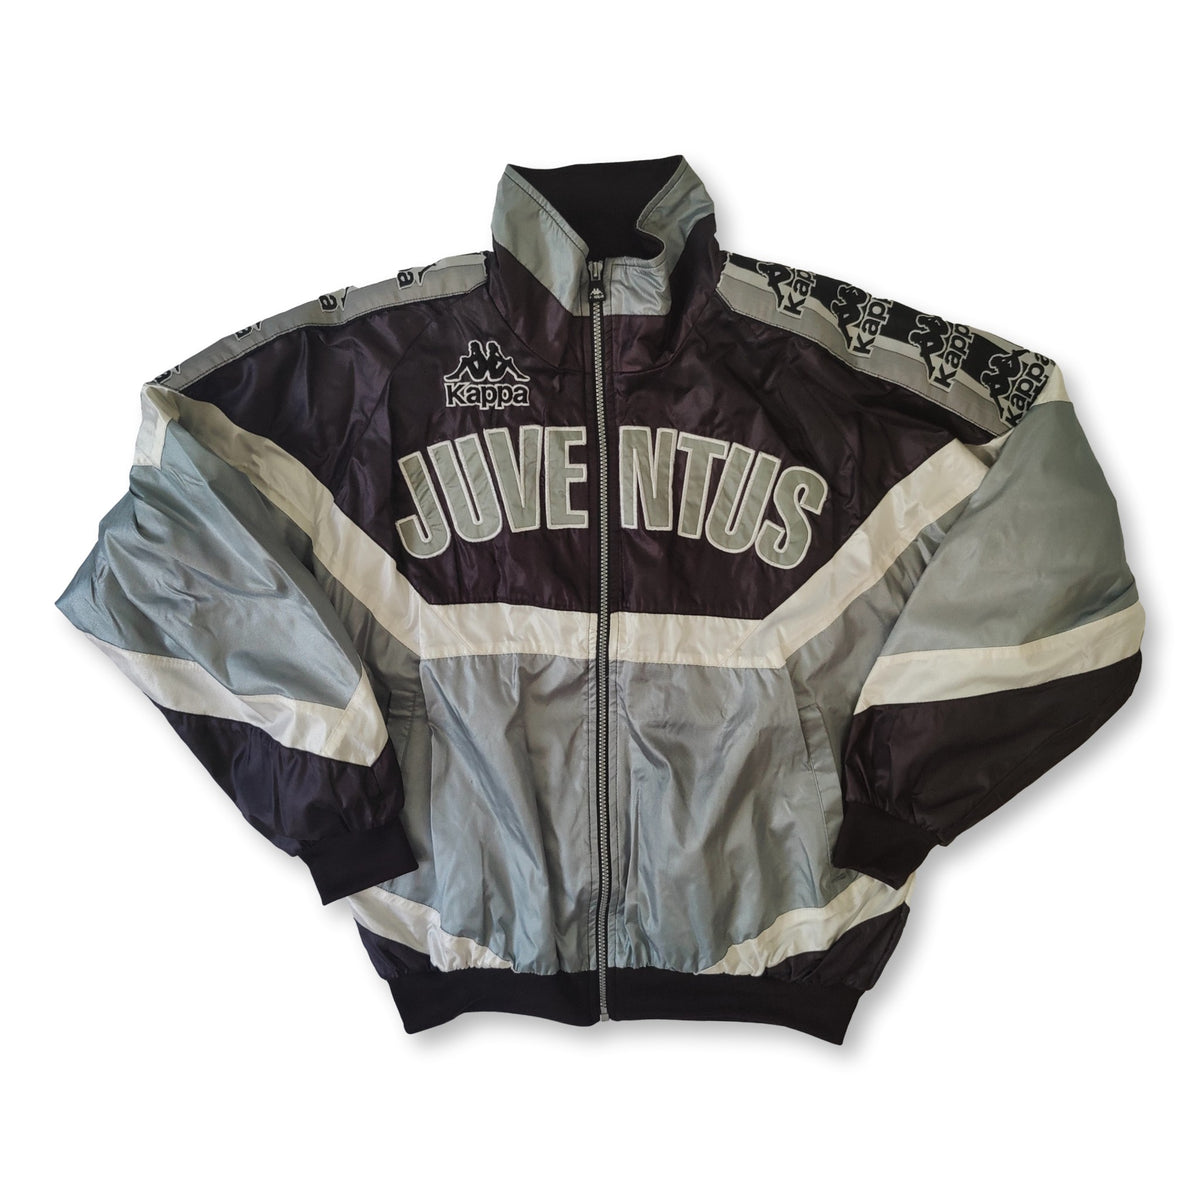 Juventus Kappa jacket   retroiscooler   Vintage Juventus